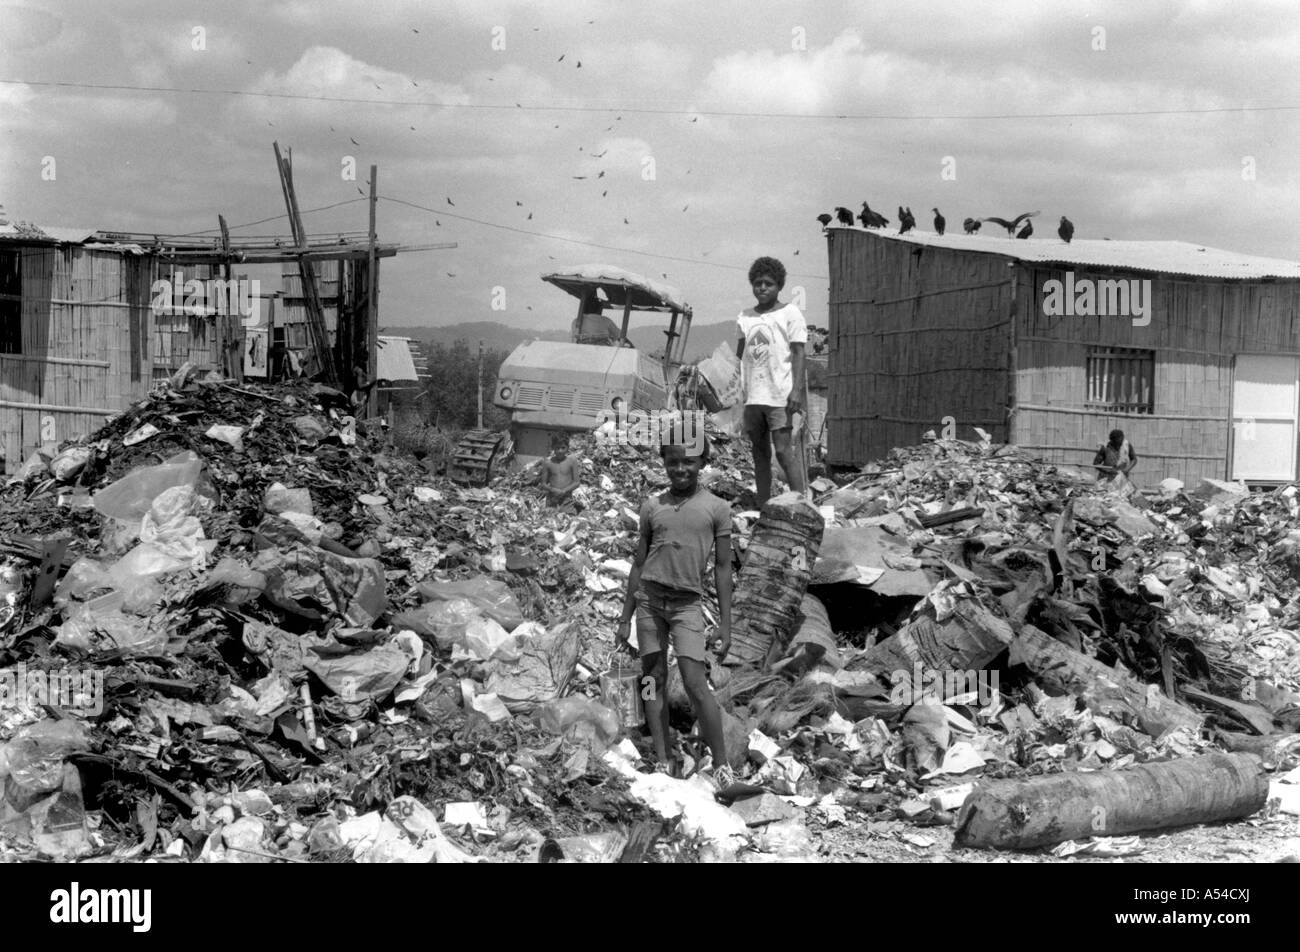 Painet hn1908 482 in bianco e nero ambiente i bambini giocando garbage dump guayaquil ecuador paese nazione in via di sviluppo meno Foto Stock